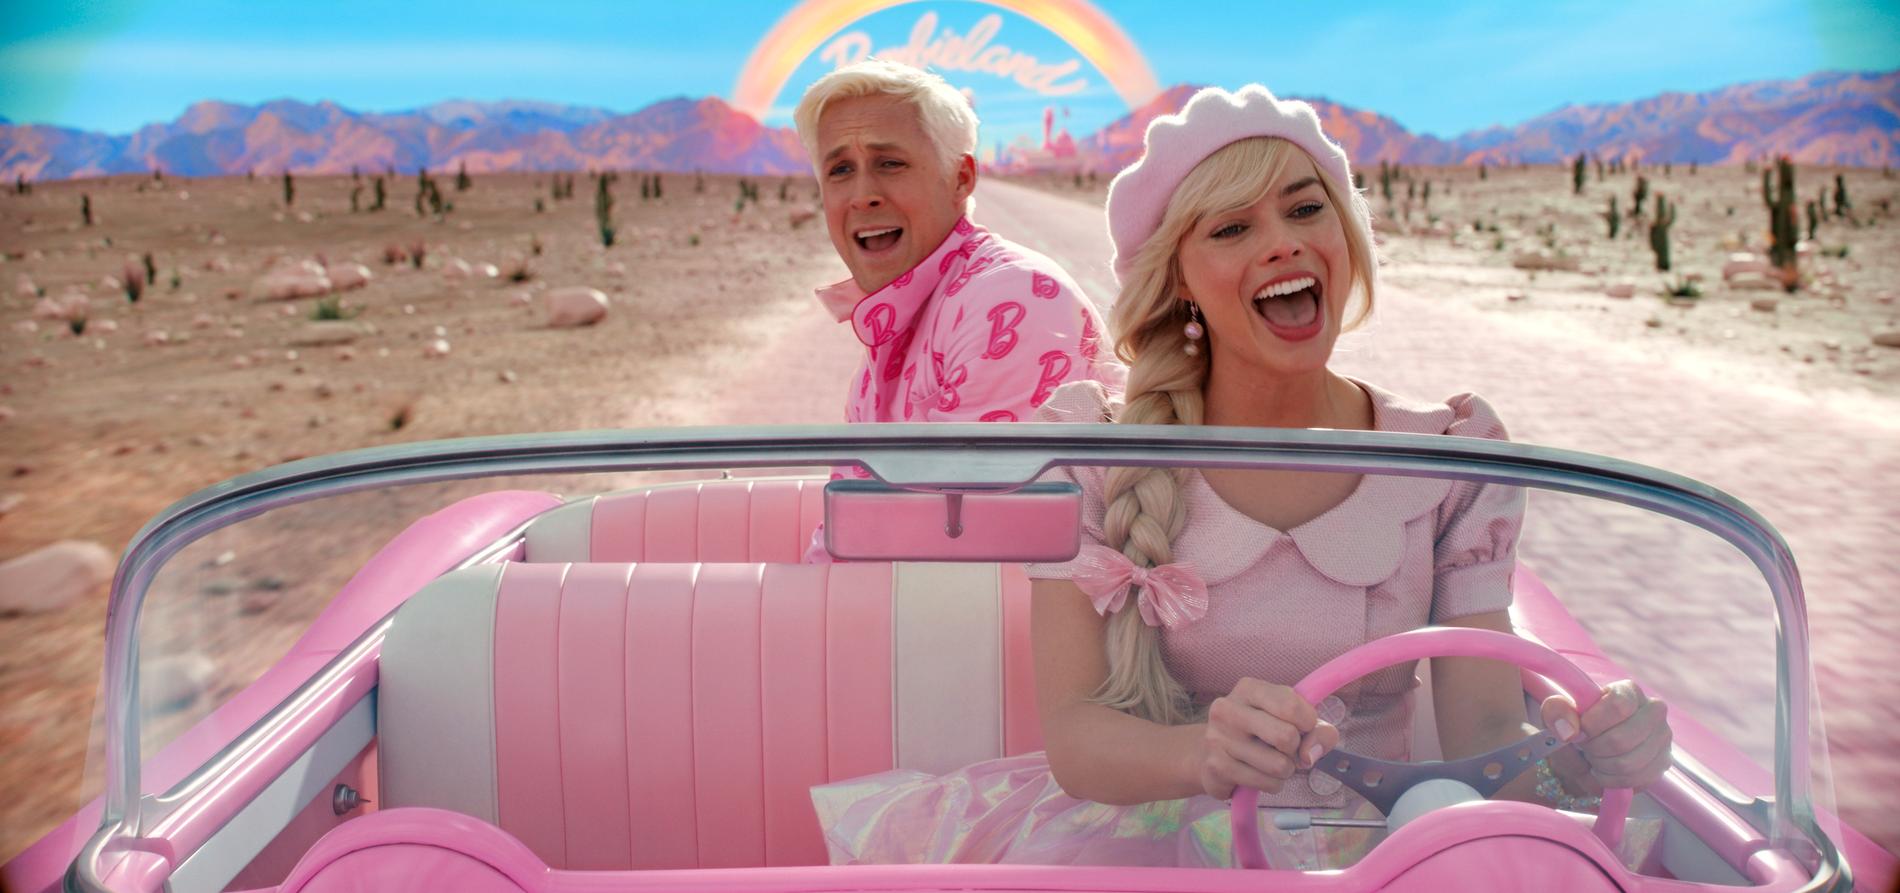 Ryan Gosling och Margot Robbie som Ken och Barbie i den mycket hajpade "Barbie", som den här veckan slåss om publikens uppmärksamhet mot atombombsfilmen "Oppenheimer". Pressbild.